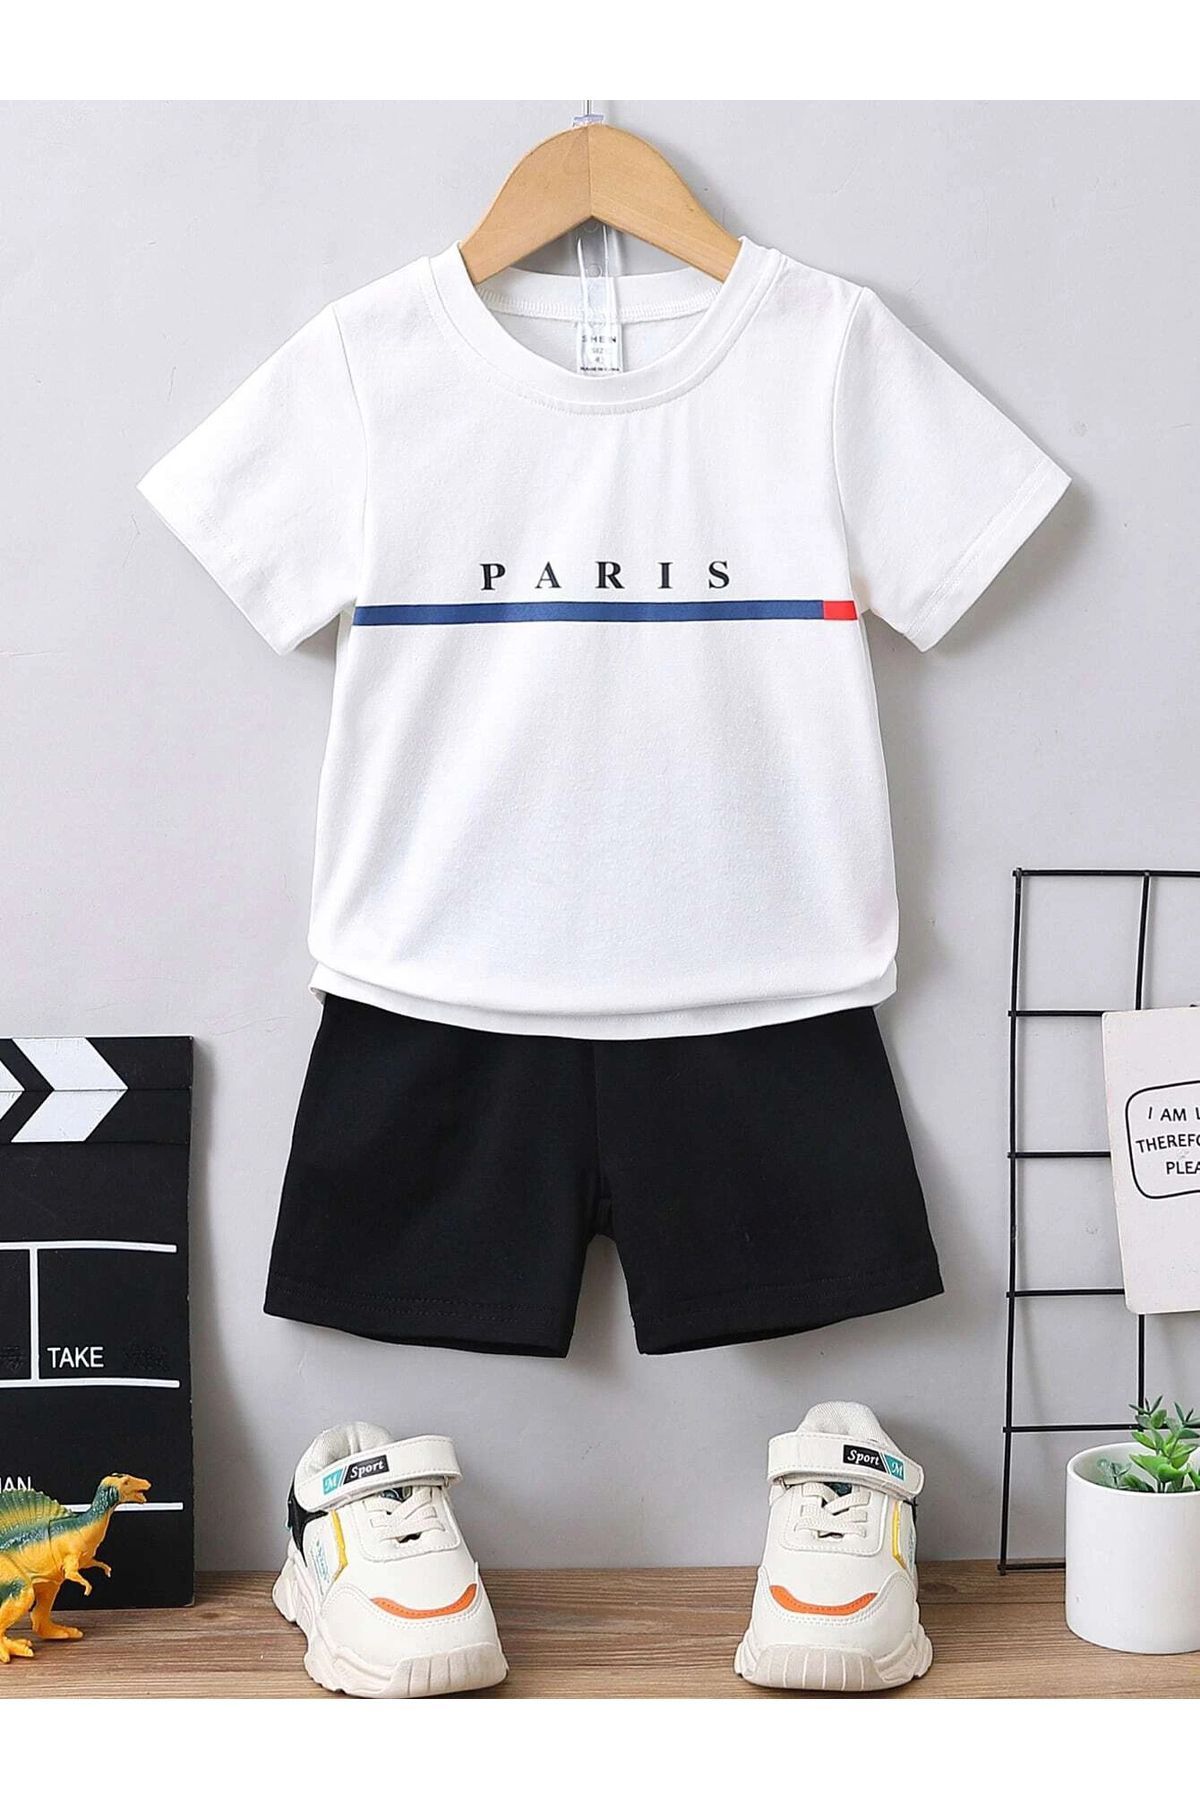 CLAYES Paris Baskılı Pamuklu Çocuk Siyah Şort Beyaz T-shirt Takım - Kız Erkek Çocuk Yazlık Bisiklet Yaka